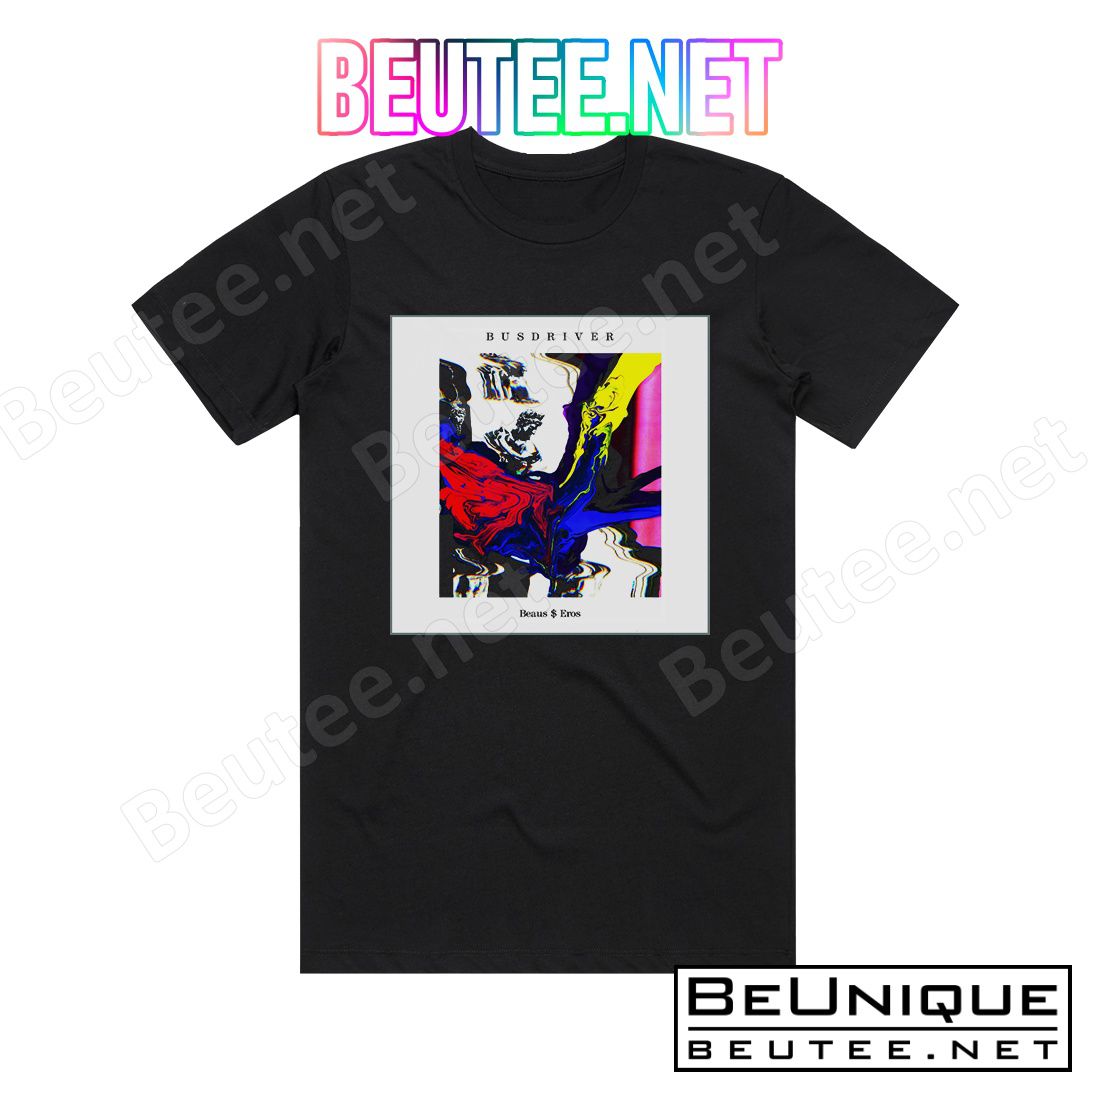 Busdriver Beaus Eros Album Cover T-Shirt